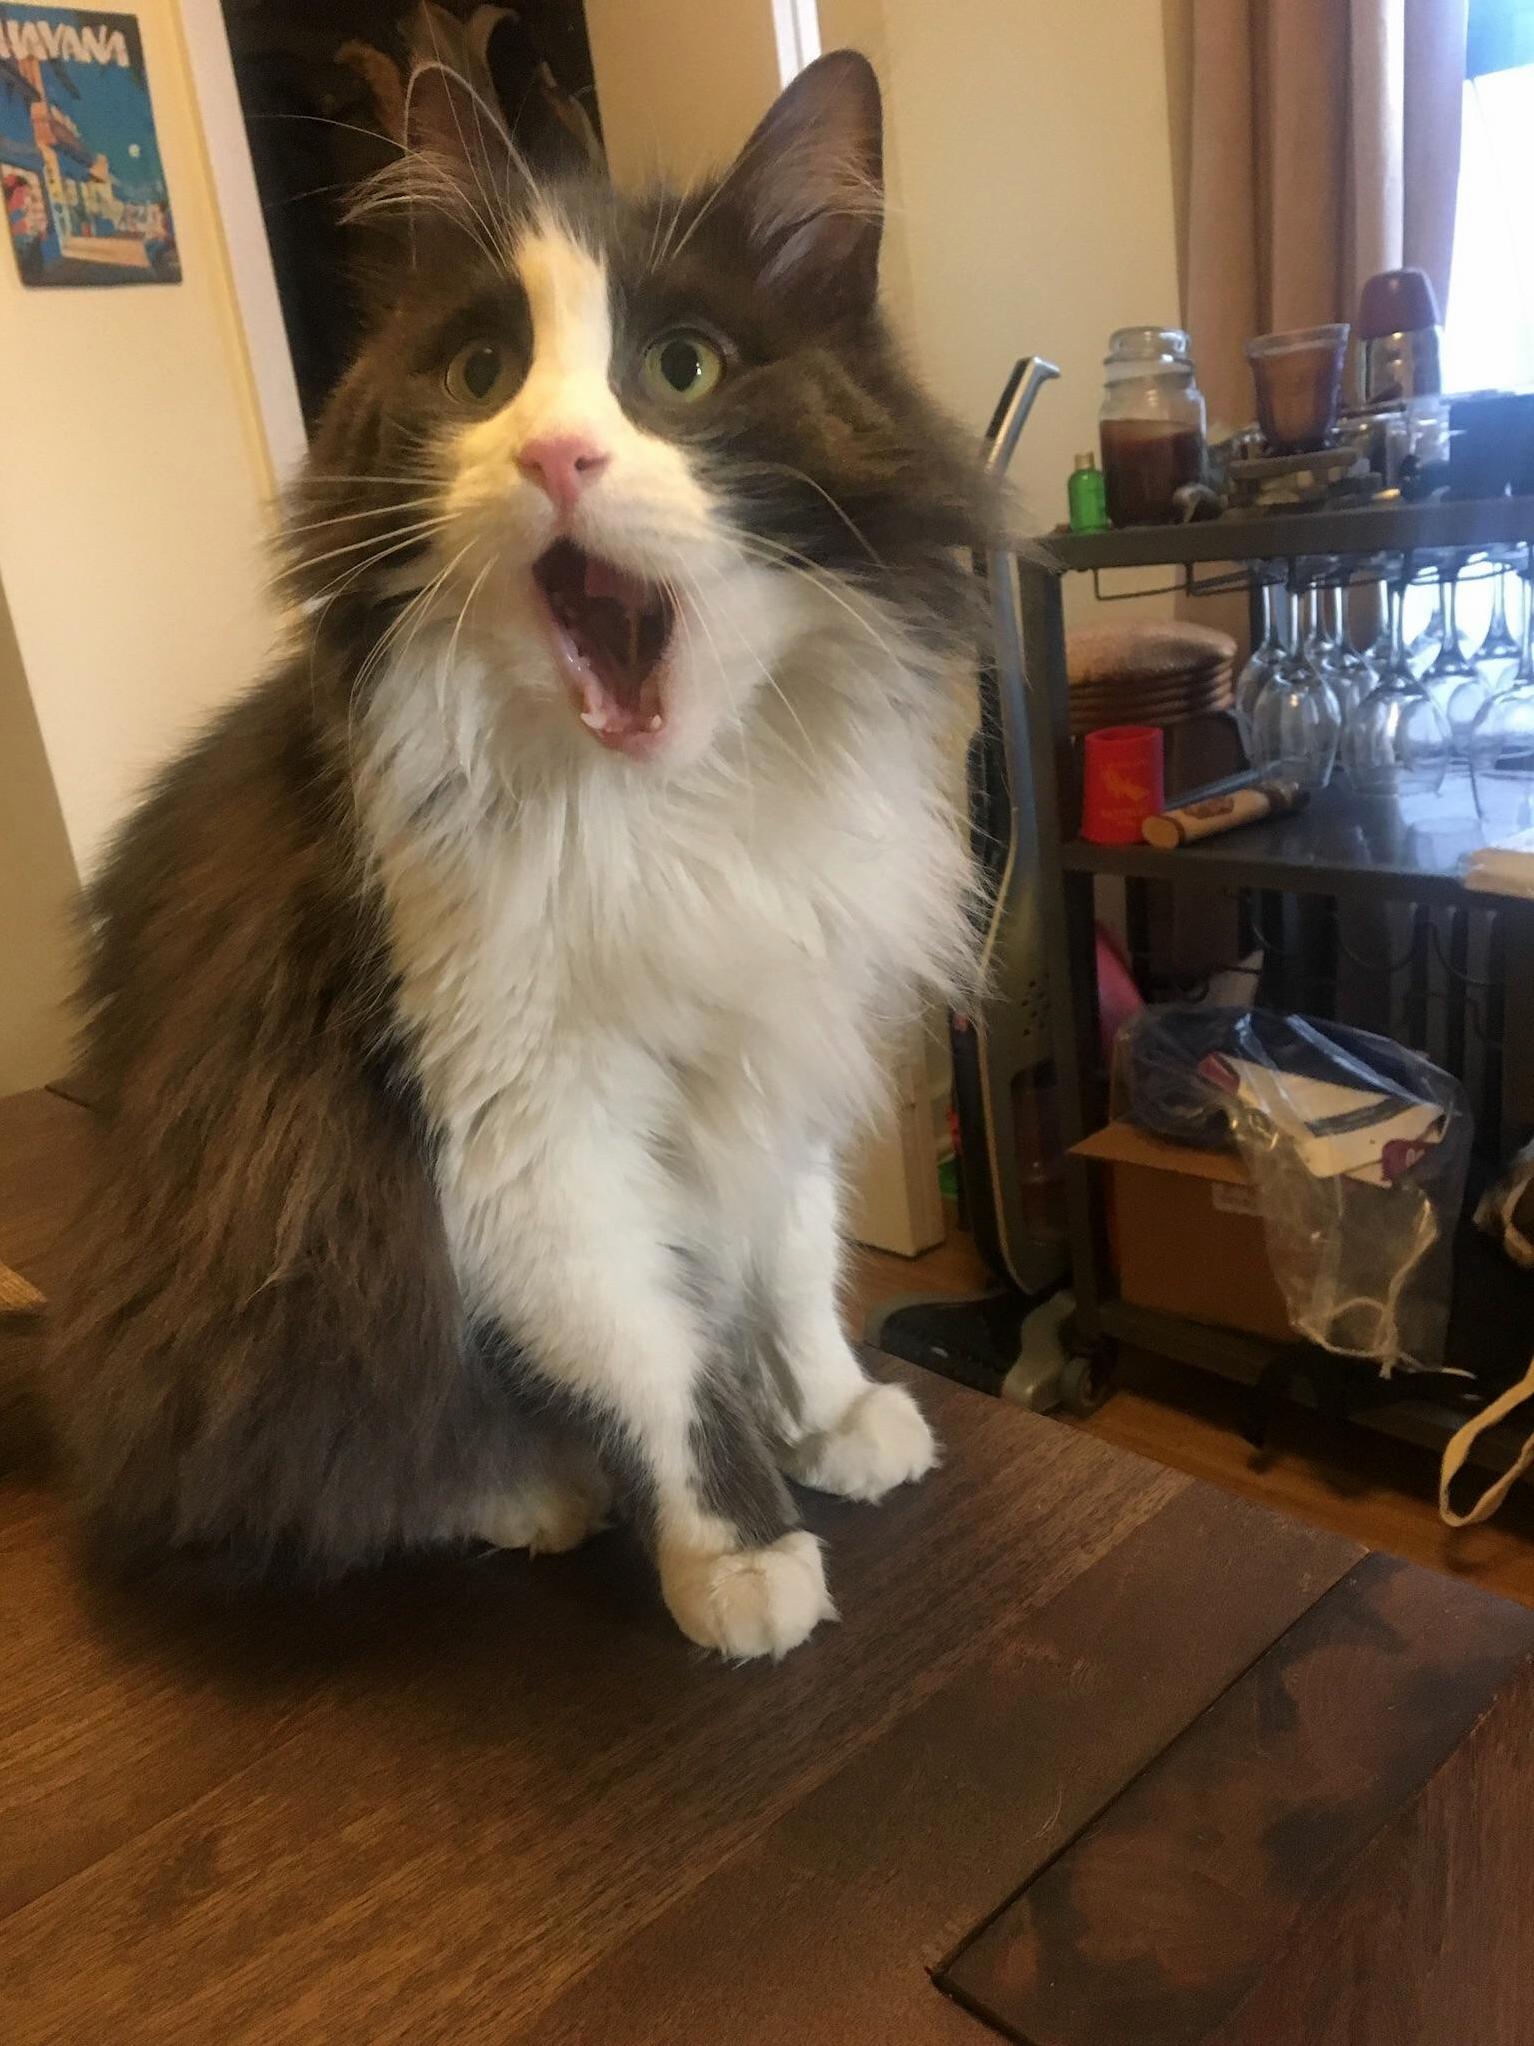 Surprised cat